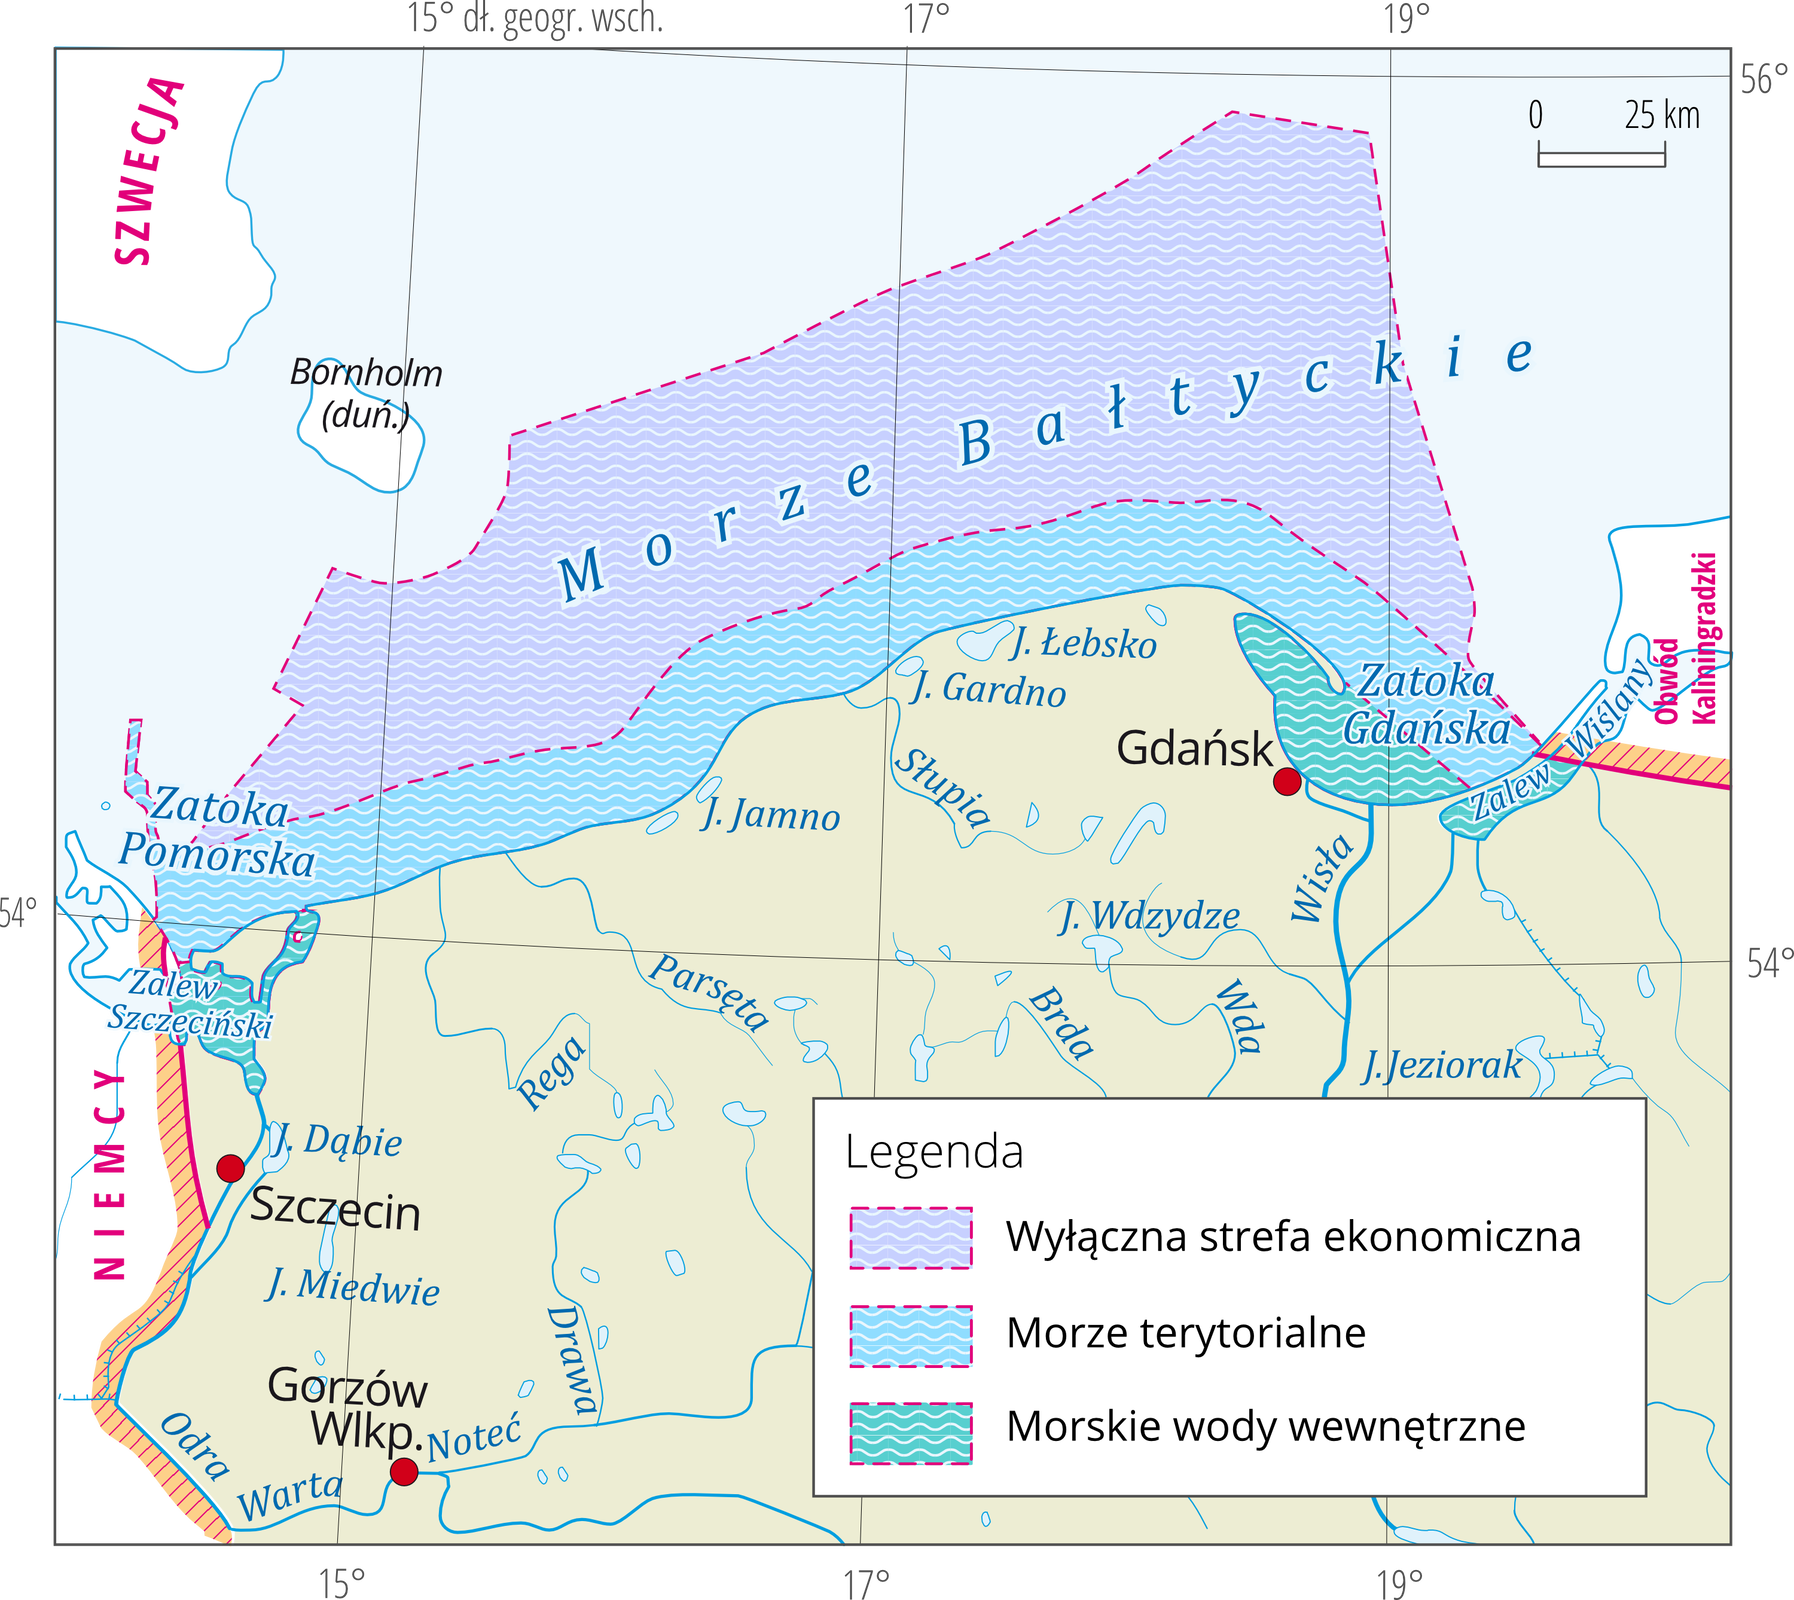 Na mapie fragment obszaru Polski – wybrzeże. Kolorowymi pasami oznaczono zasięg morskich wód wewnętrznych, terytorialnych i wyłącznej strefy ekonomicznej.